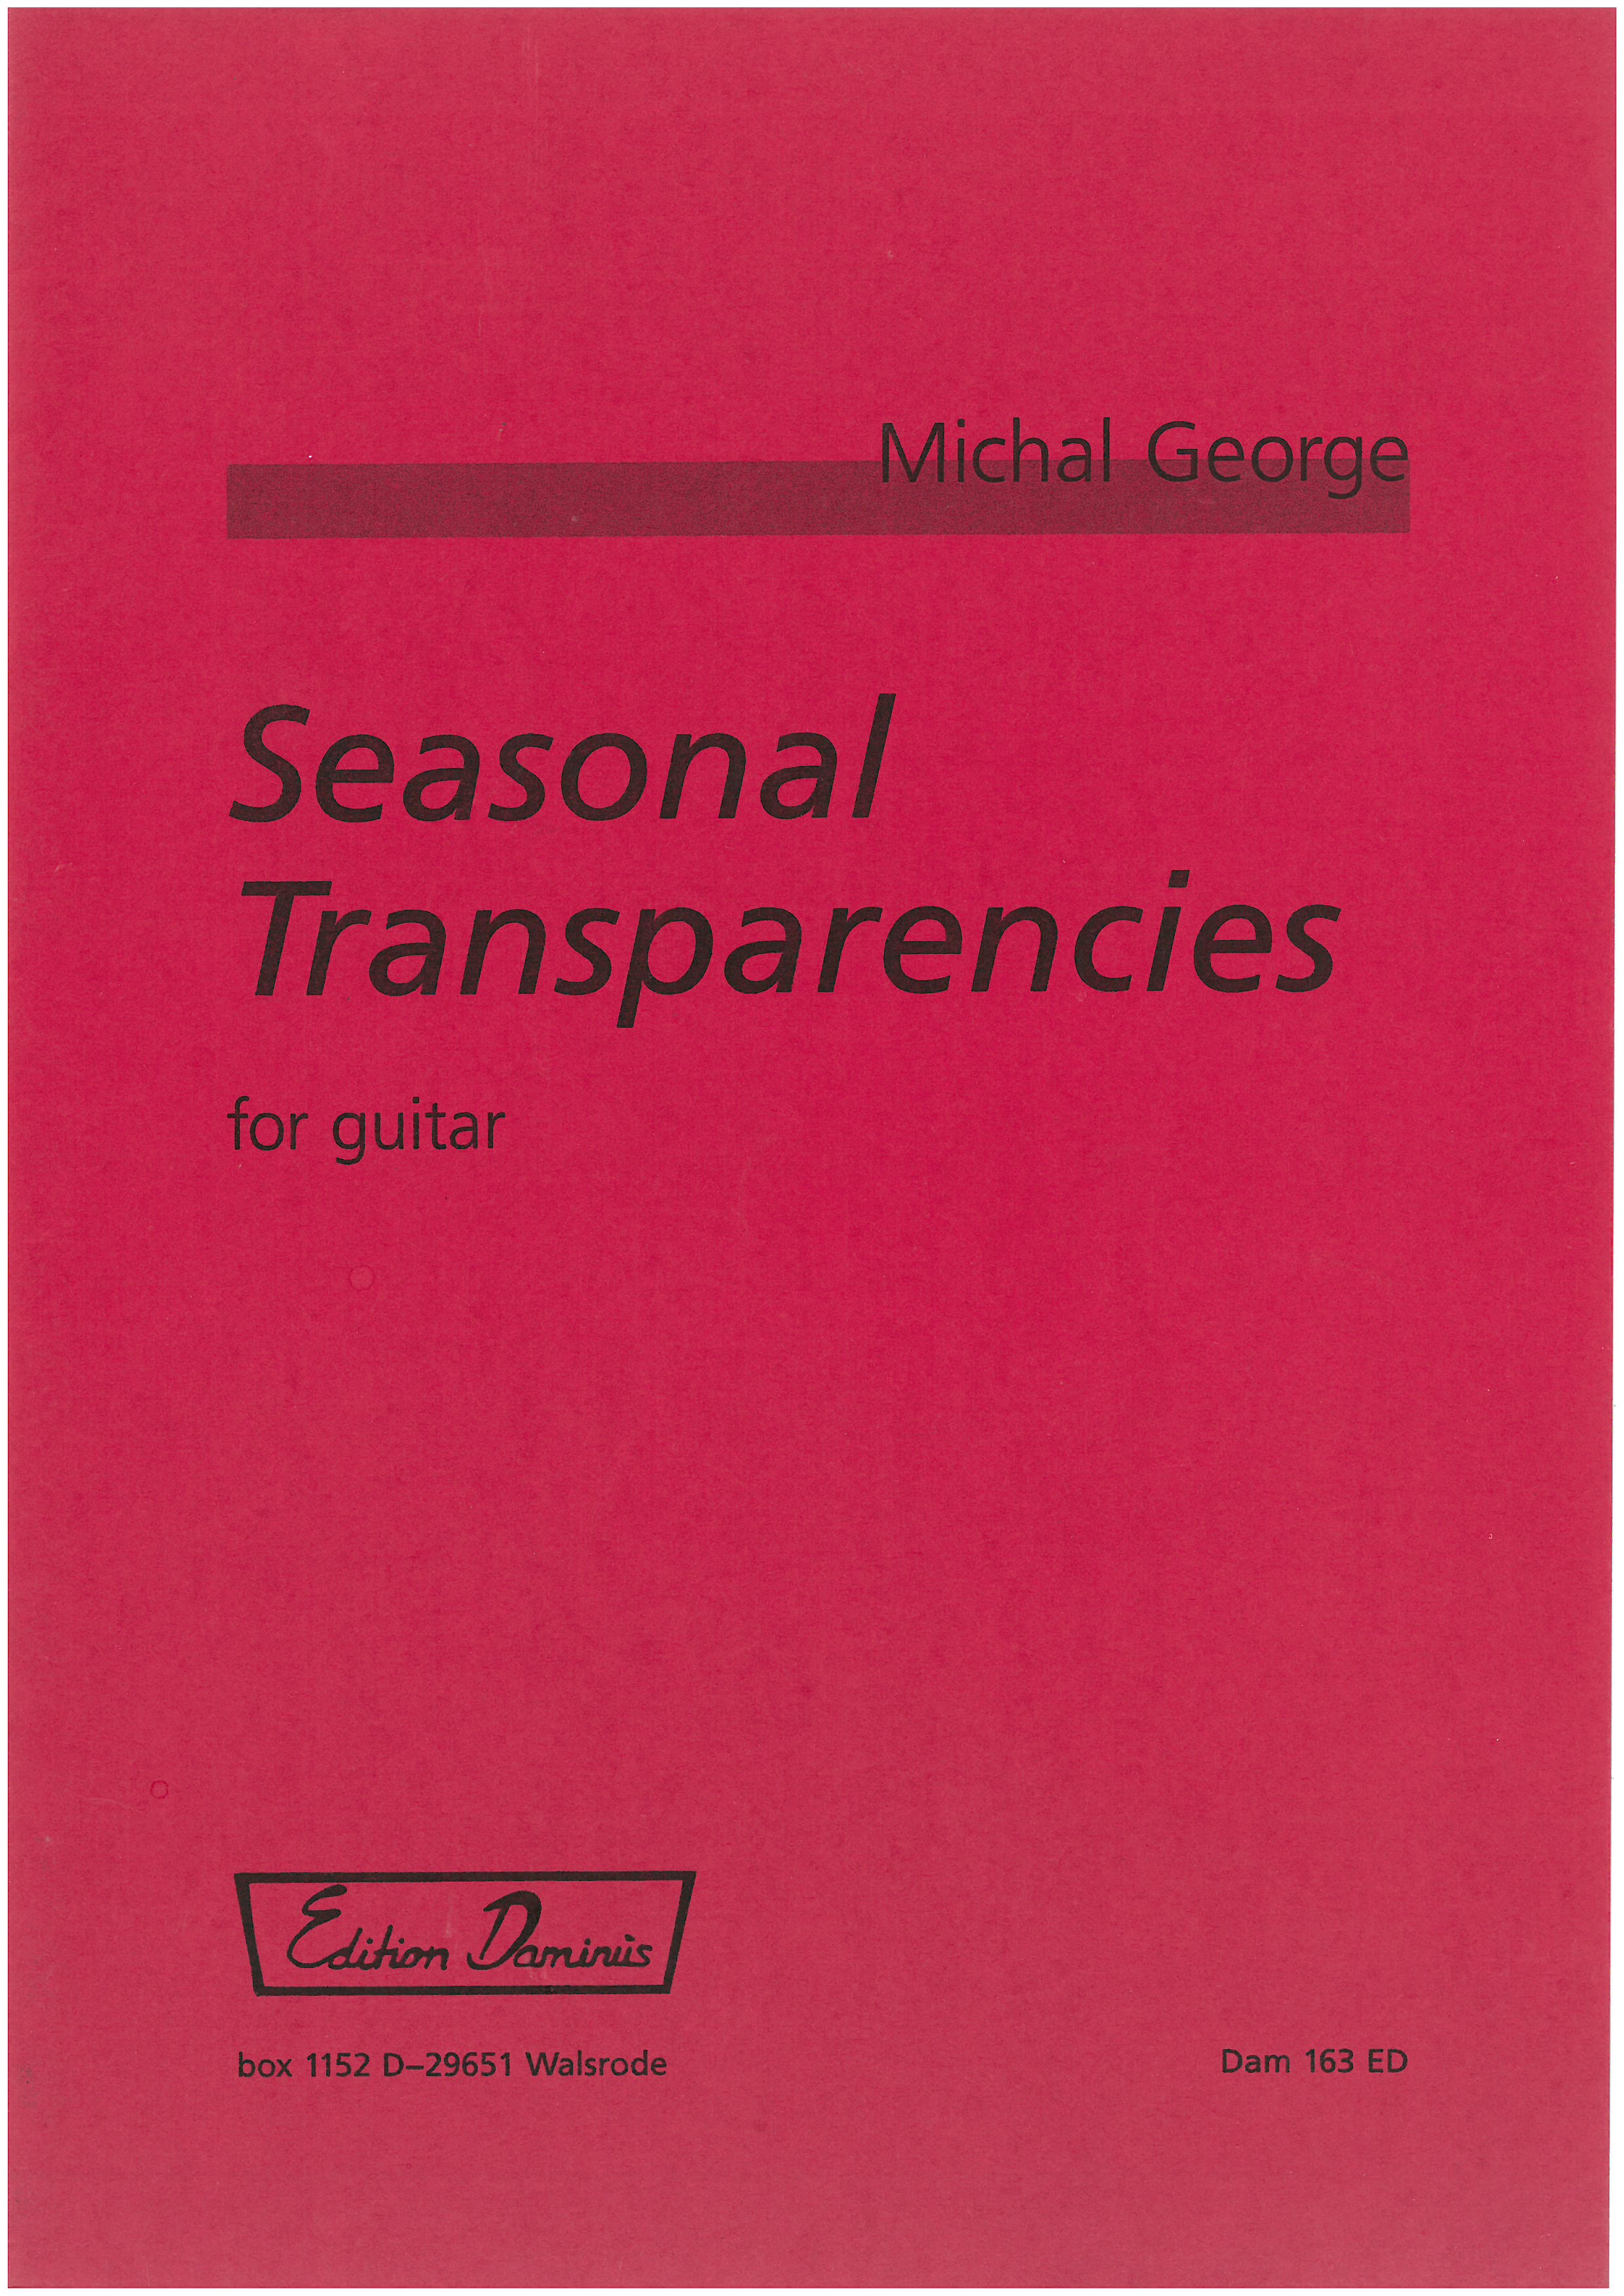 Seasonal Transparencies